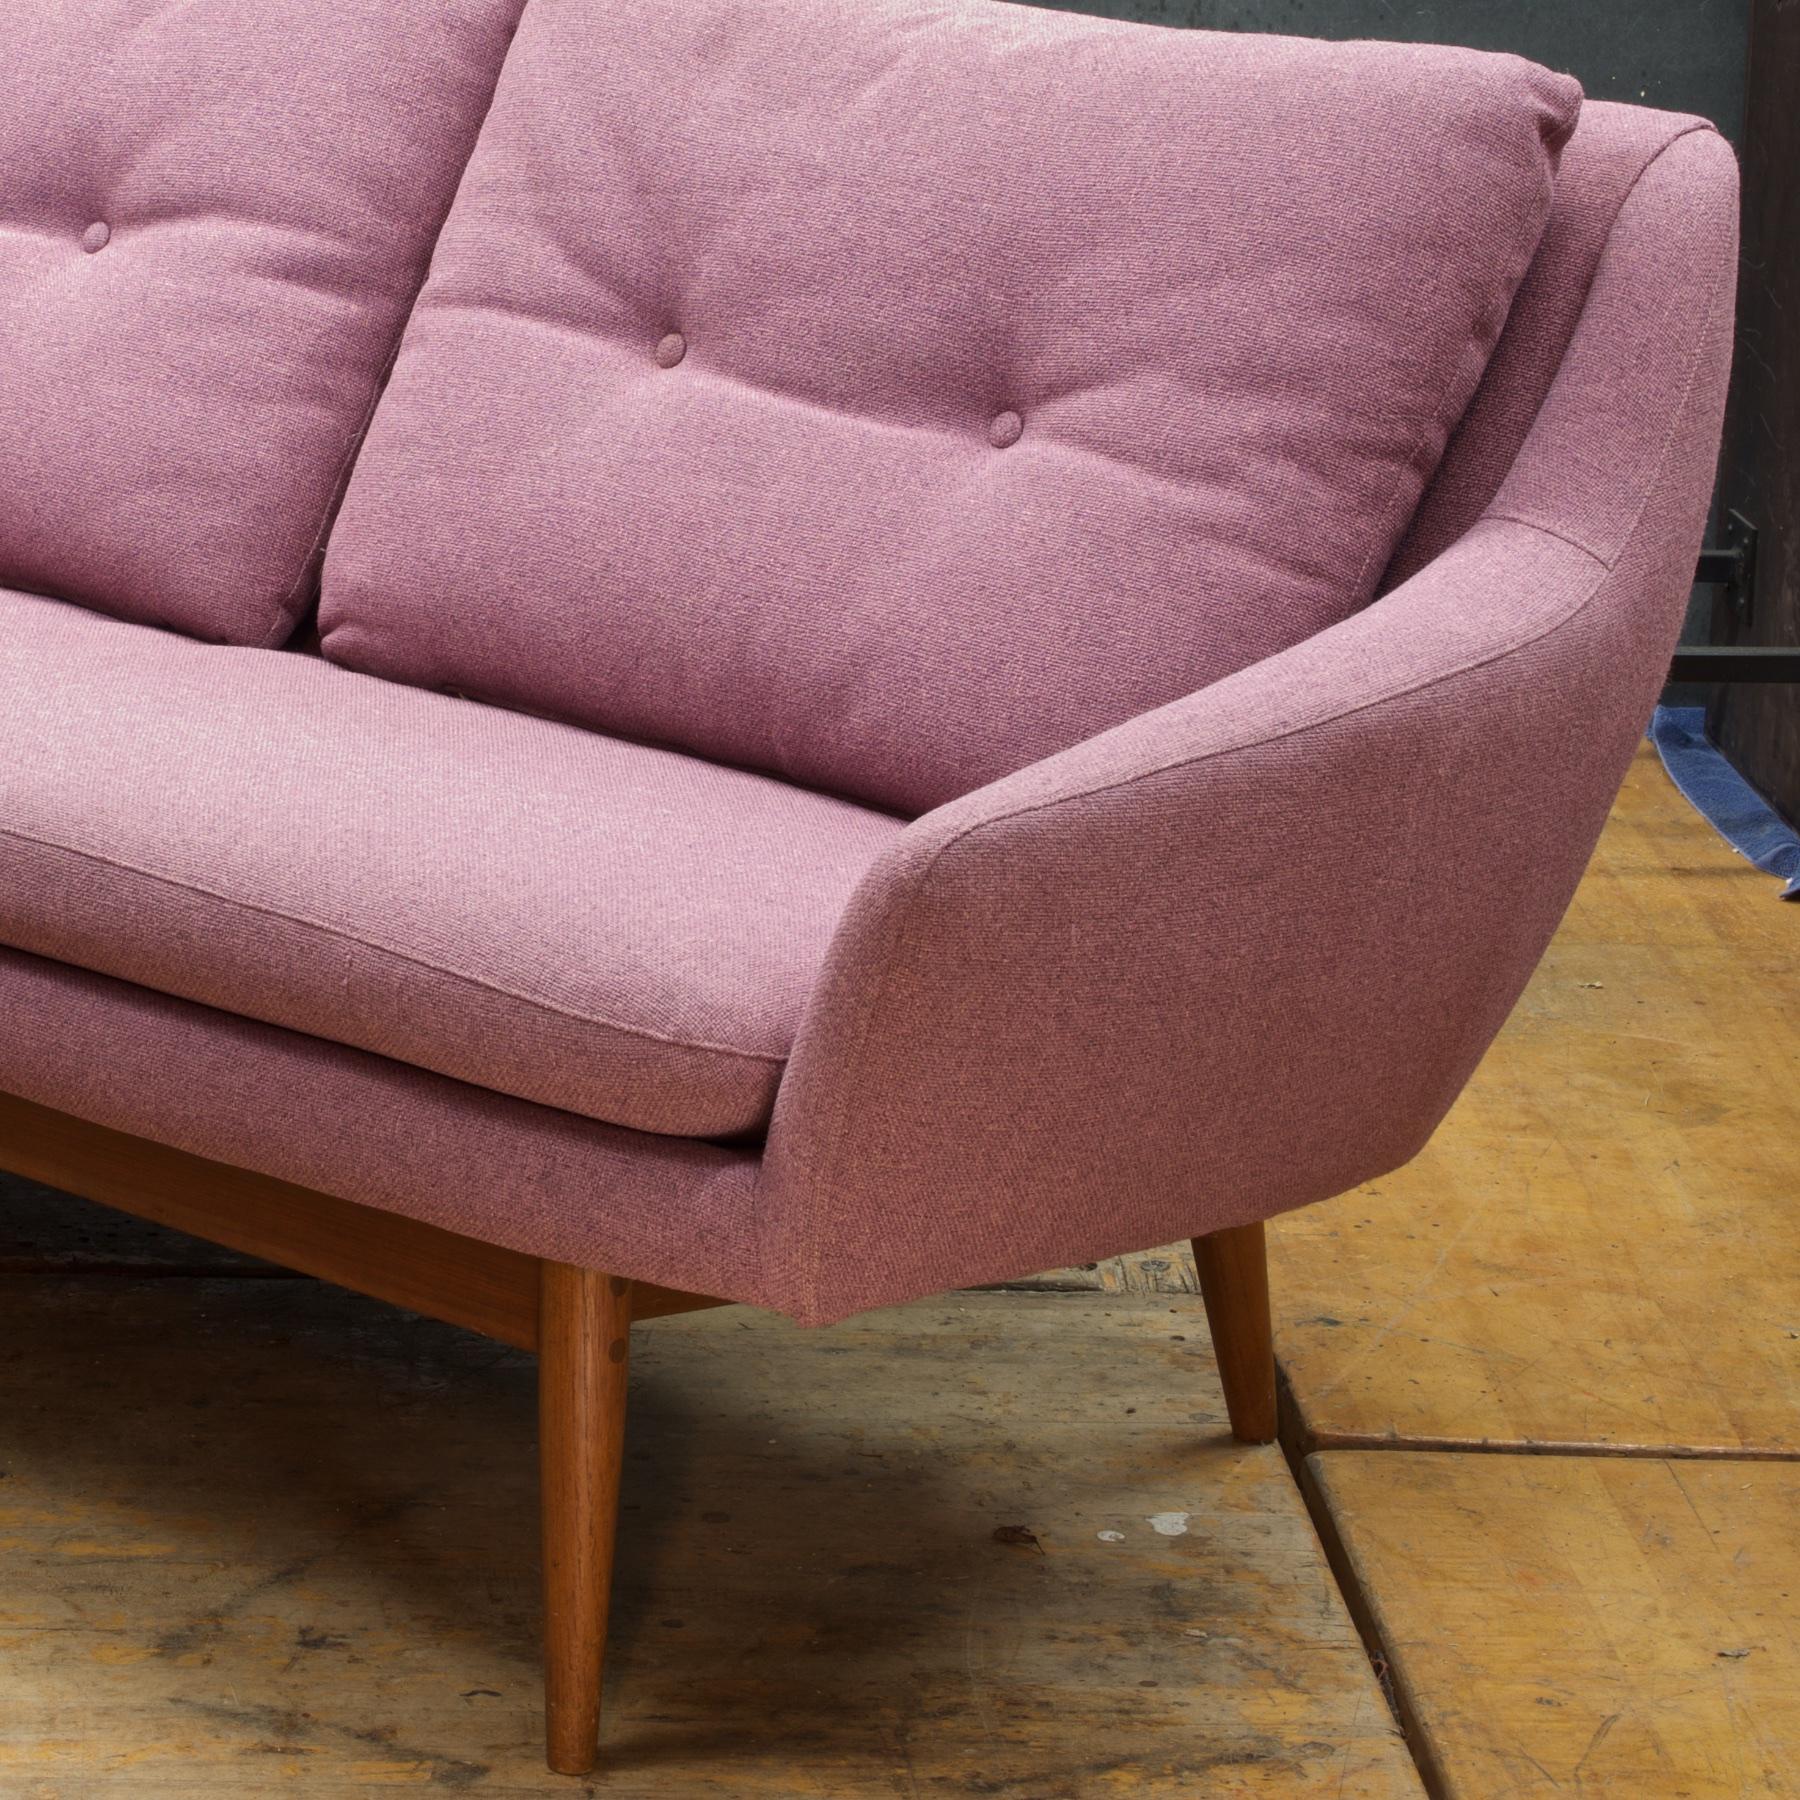 Norwegian Pink-Mauve Scandinavian Sofa Vintage 1960s Mid-Century Modern Mad Men Norway